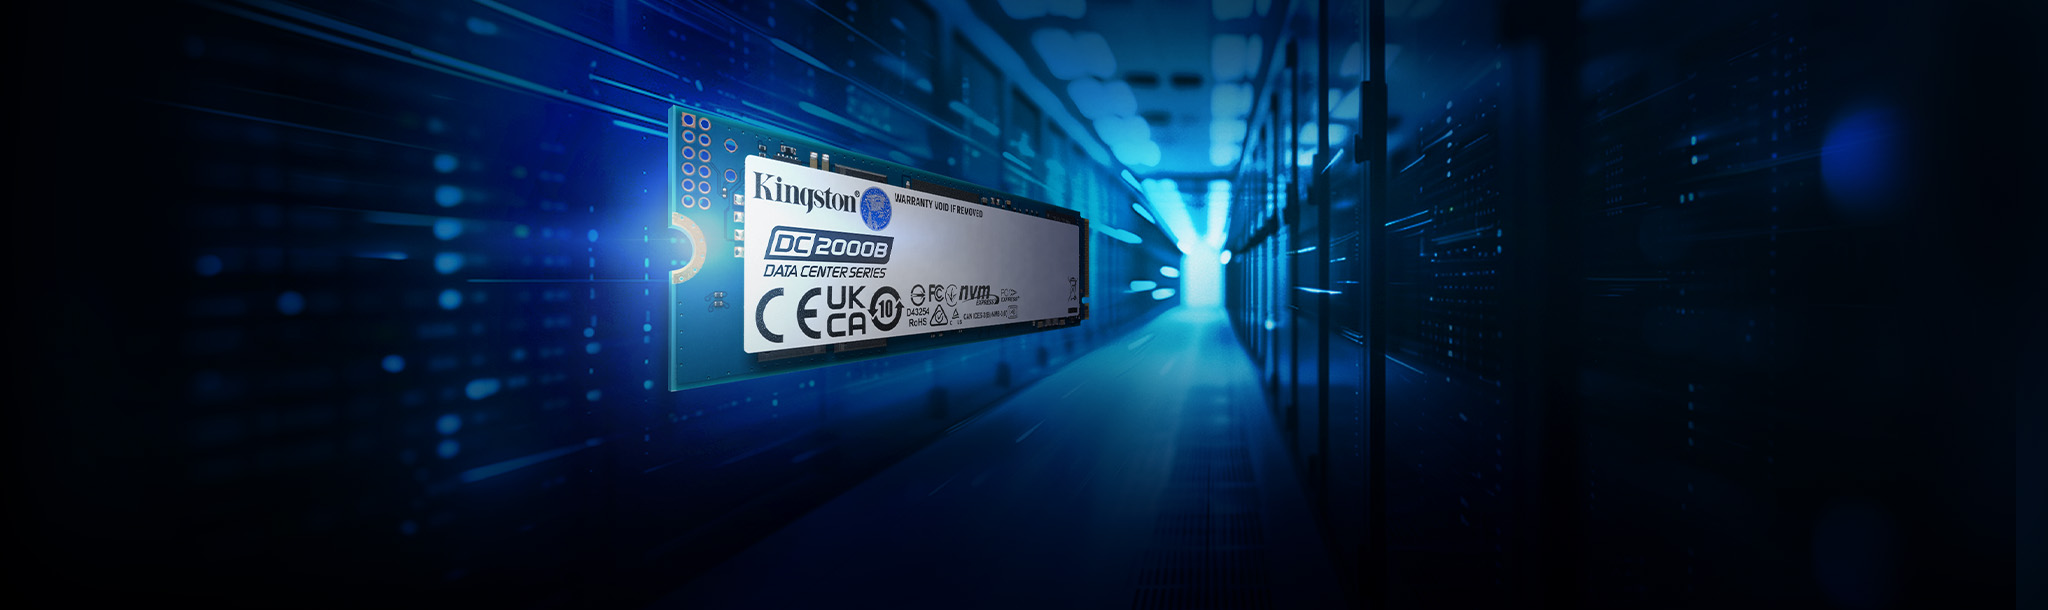 一张 Kingston DC2000B SSD 的图片，背景简洁，展现出动态和速度感。